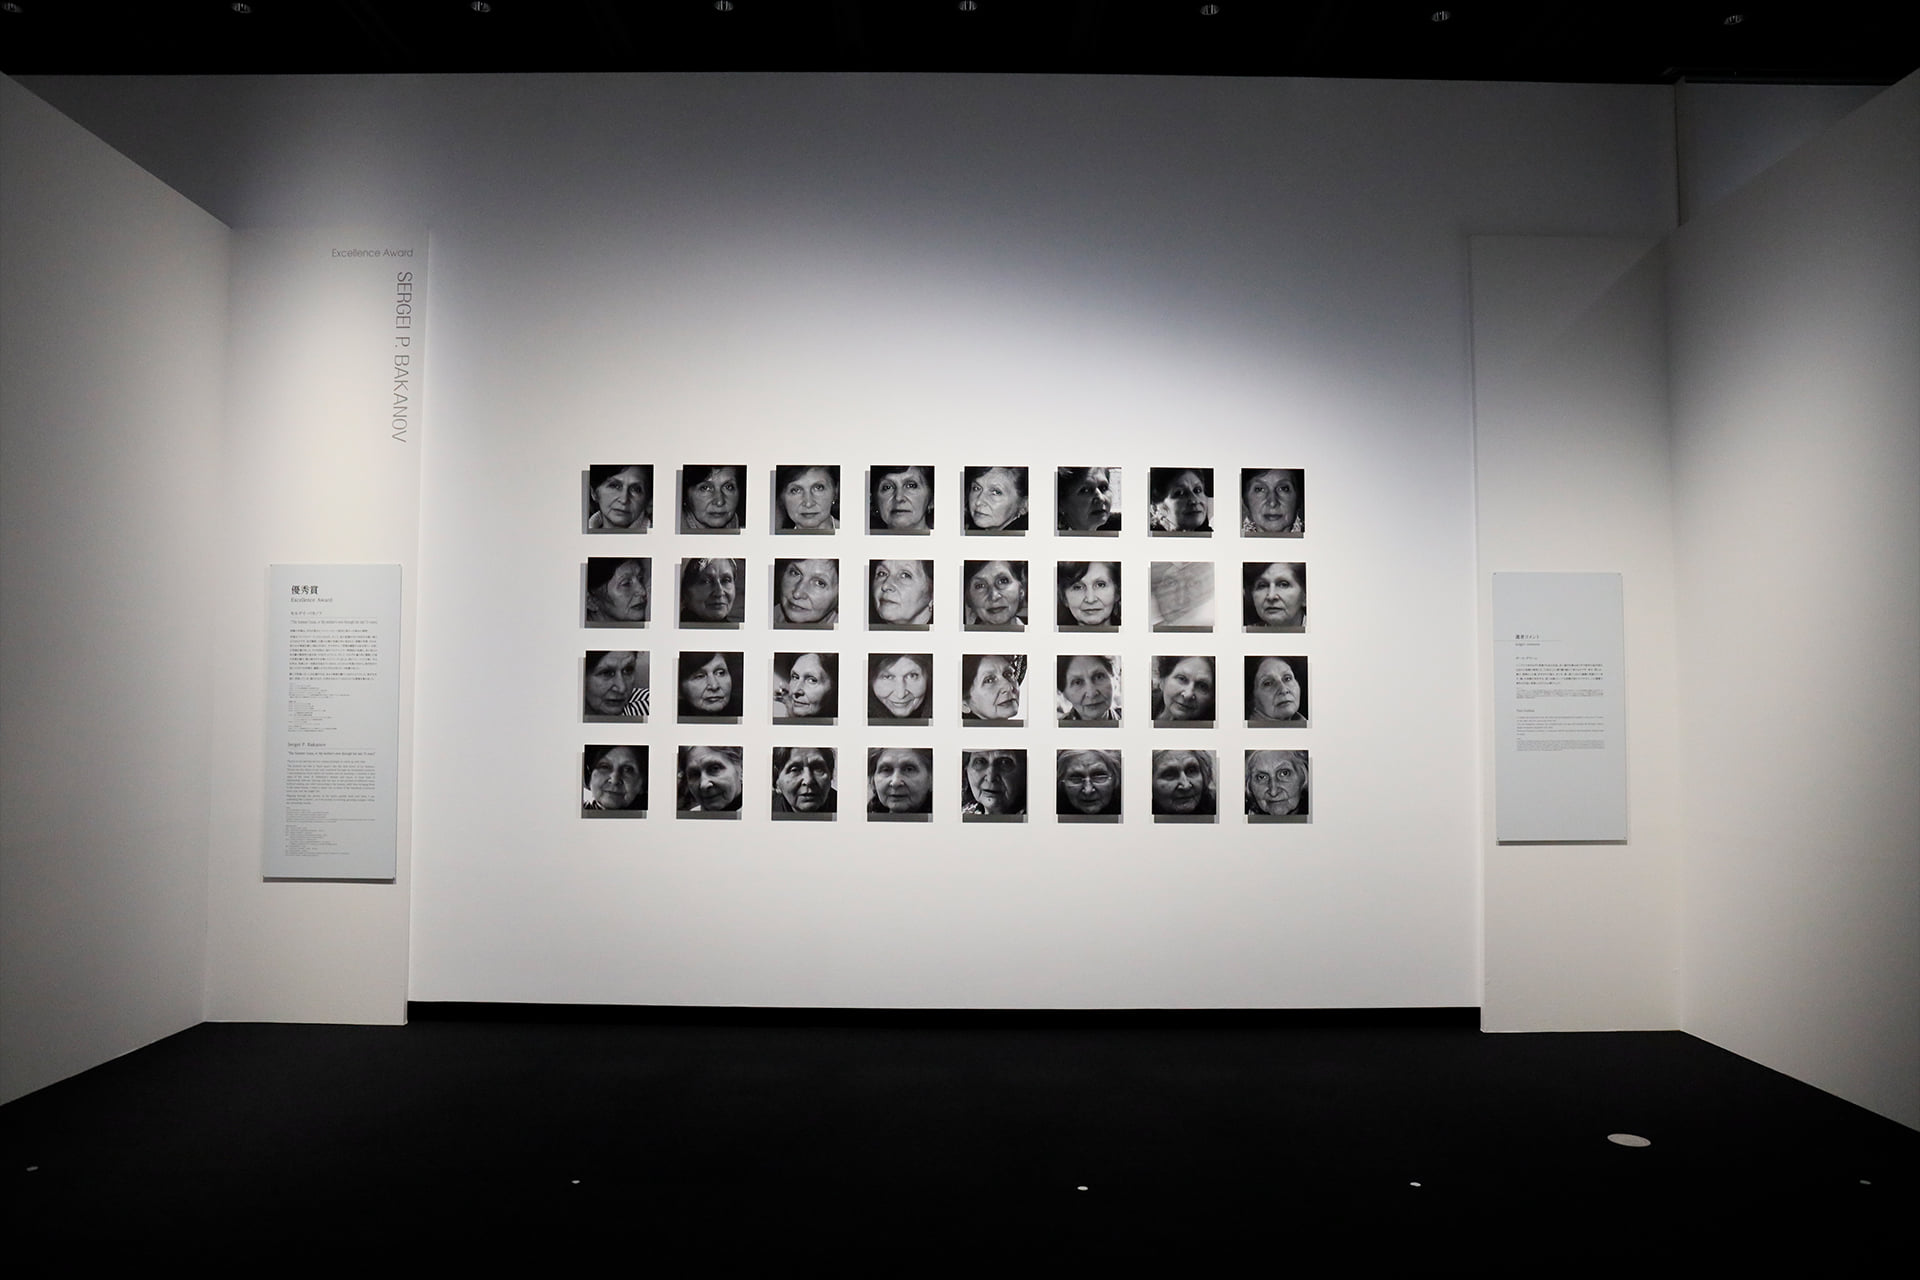 Культура в Томске, Томские новости, выставка Япония художественный музей Работы томского фотографа были выставлены в токийском Музее искусств